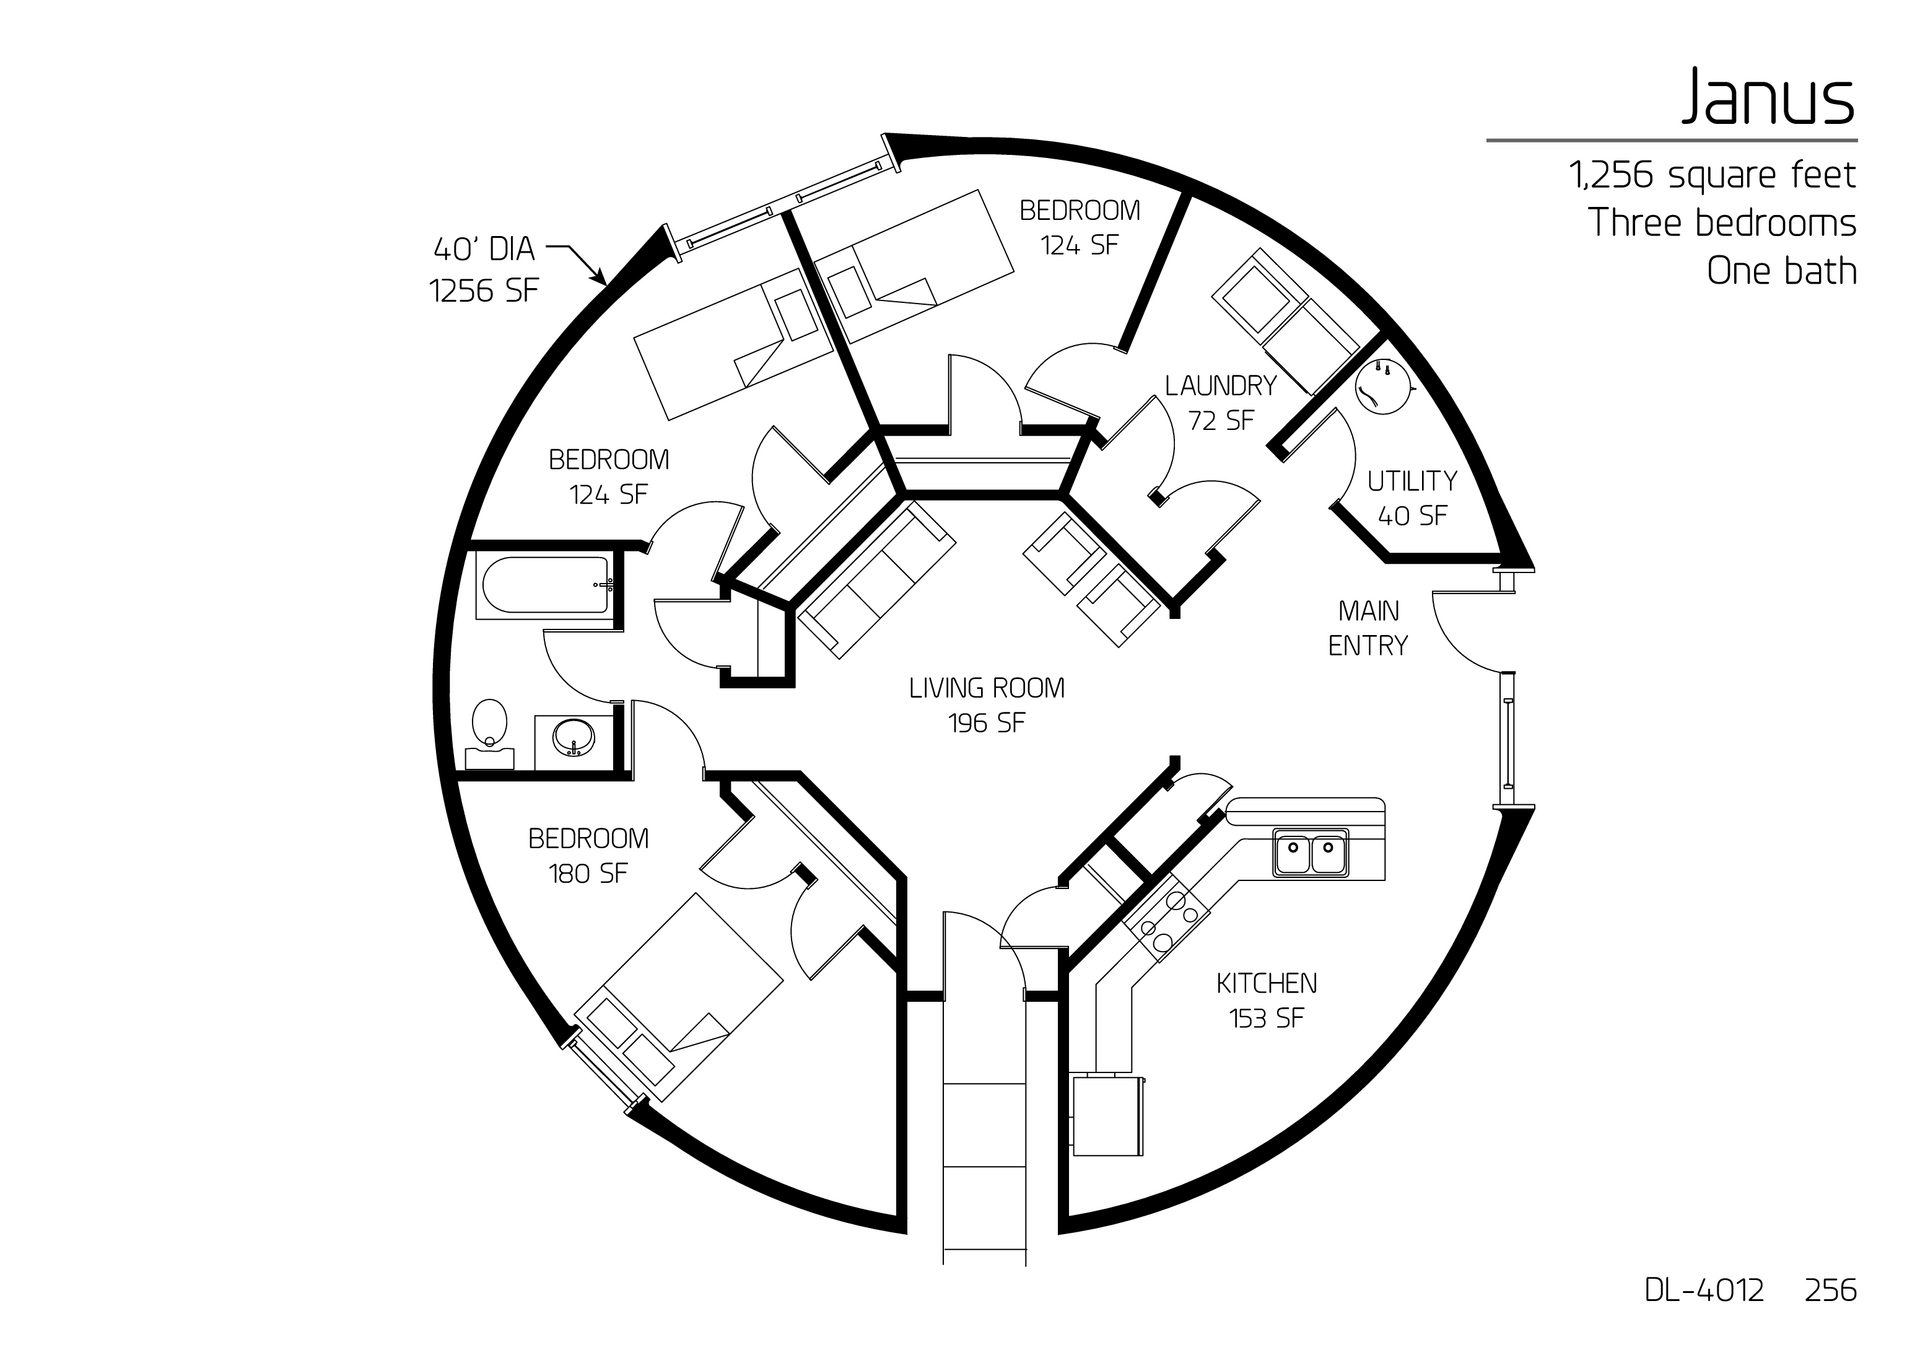 Janus: 40' Diameter, 1,256 SF, Three-Bedroom, One-Bath Floor Plan.